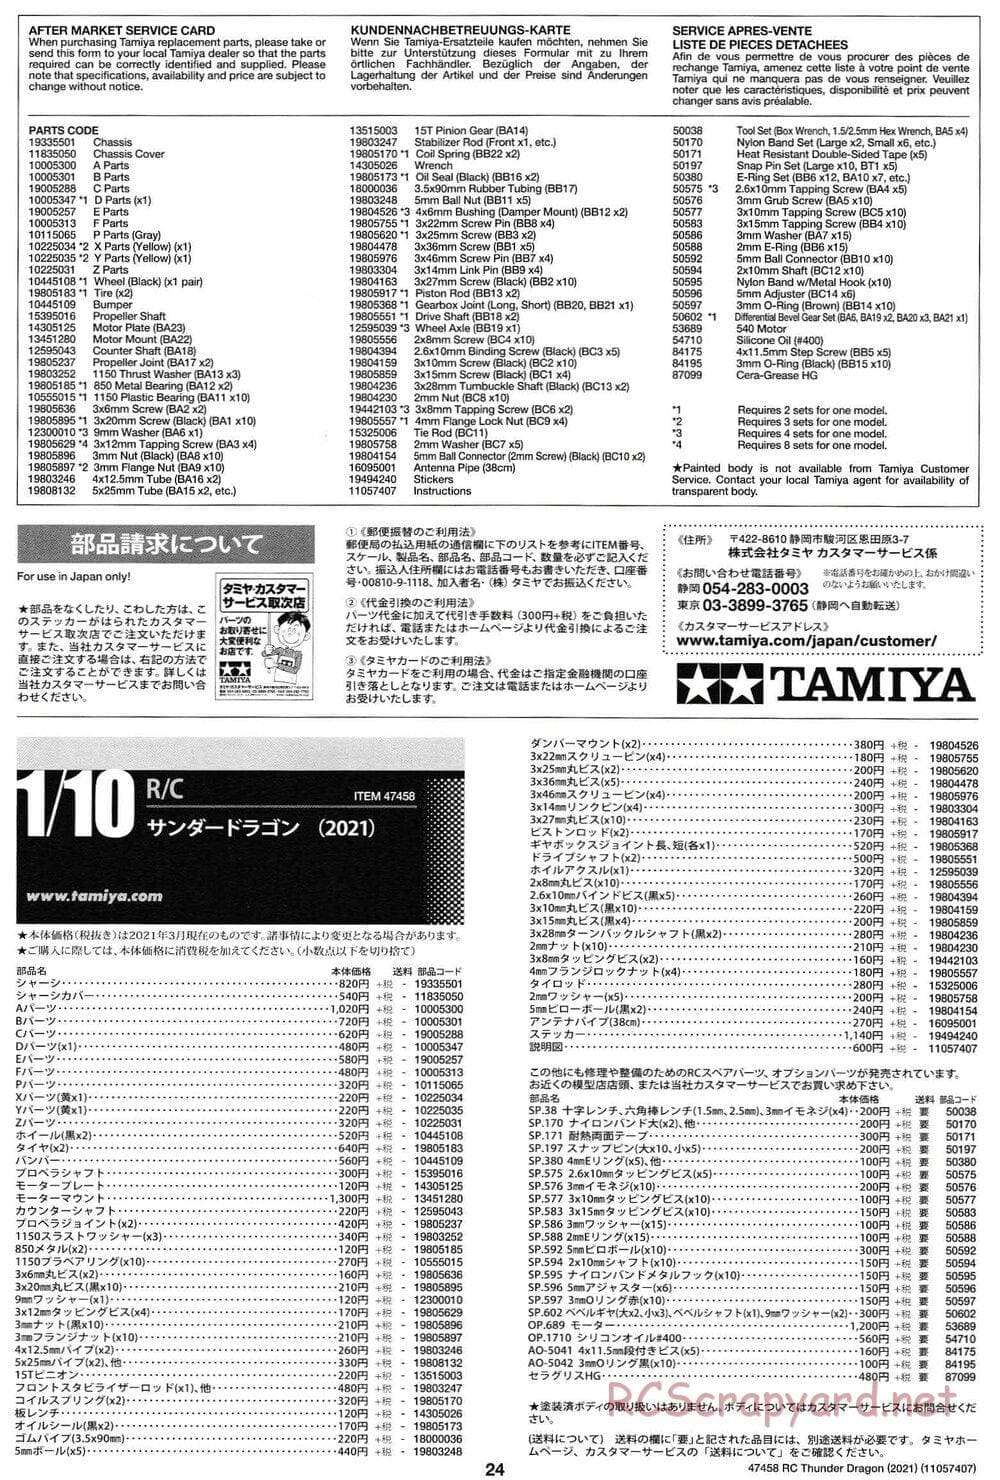 Tamiya - Thunder Dragon (2021) Chassis - Manual - Page 24